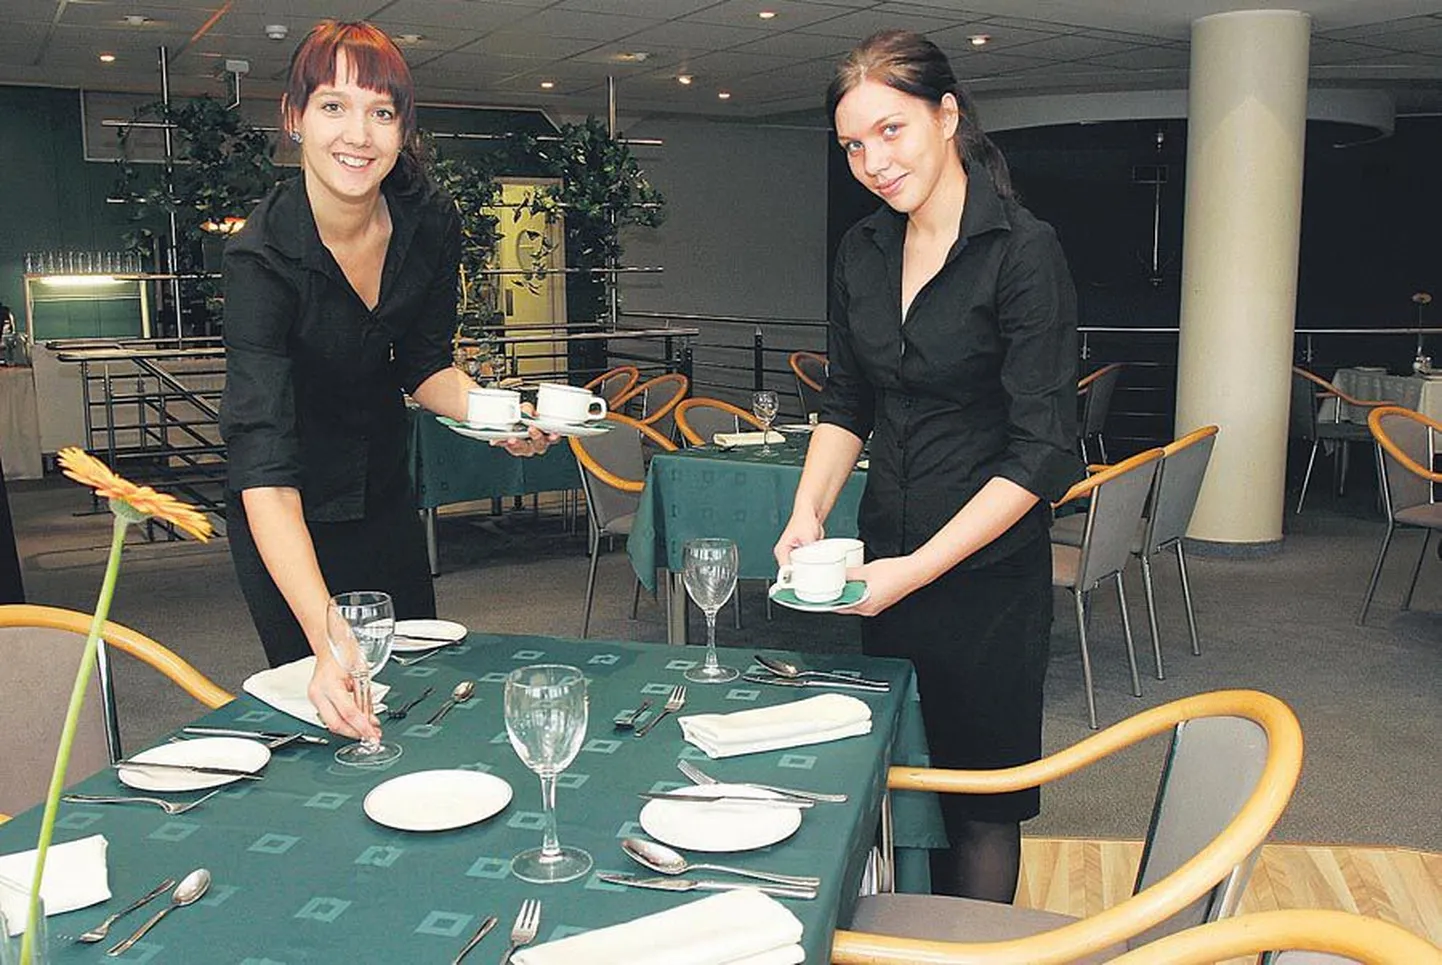 Viljandi ühendatud kutsekeskkooli koka eriala teise kursuse õpilased Karen Jaano (vasakul) ja Lea Viik katavad Centrumi restoranis lauda. Kui viimane lihv antud, võivad kliendid tulla.